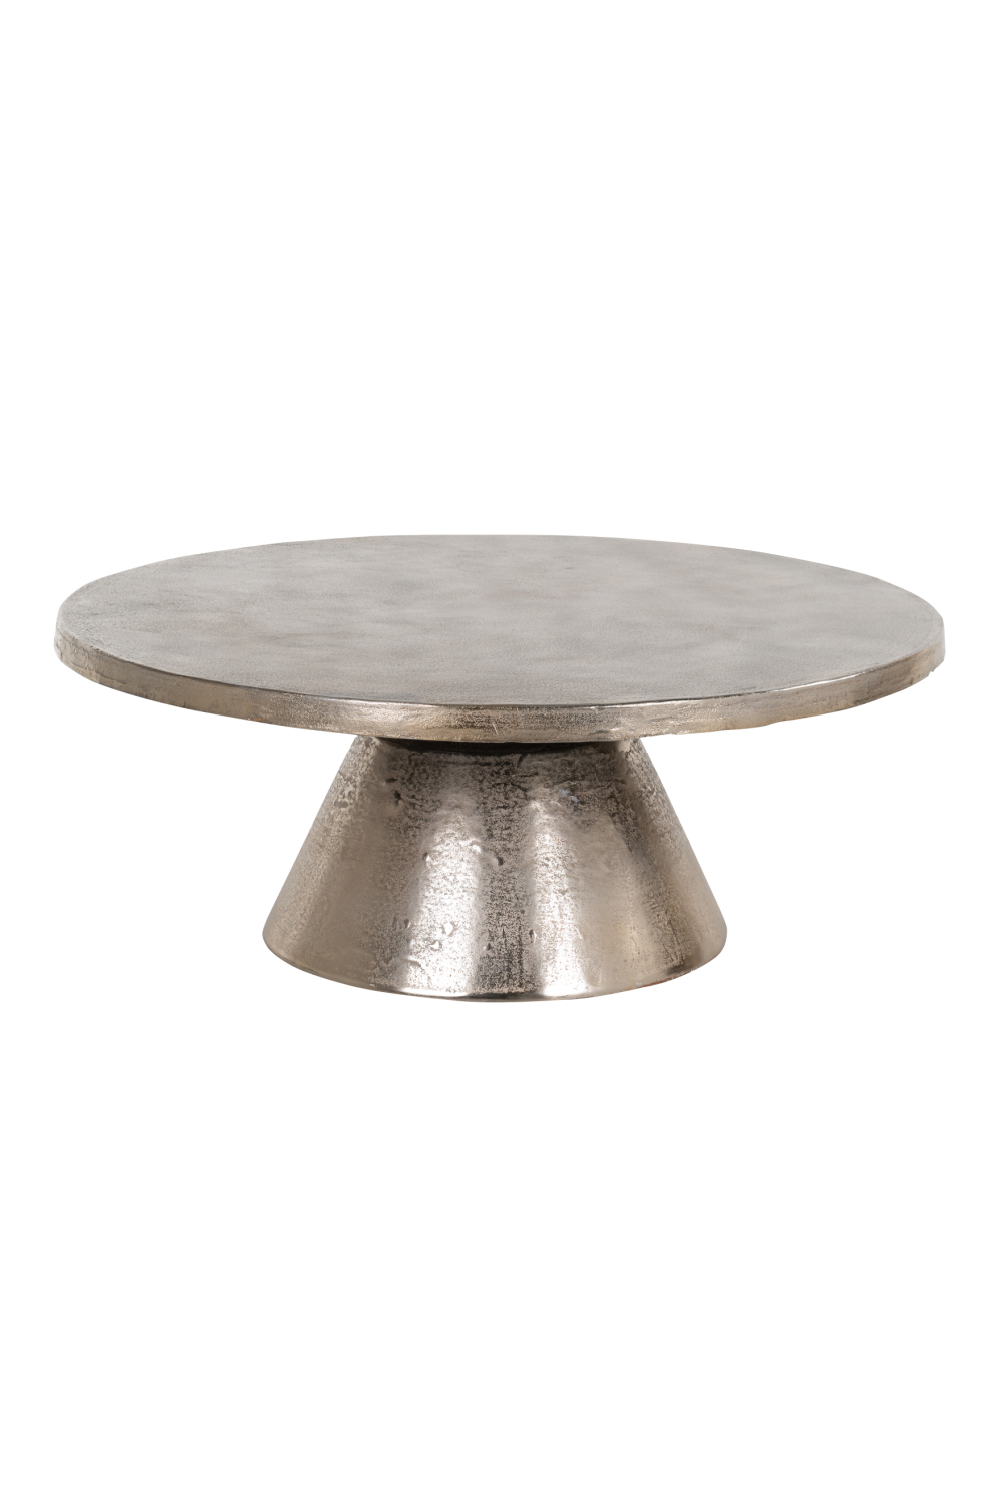 Aluminum Pedestal Coffee Table OROA Caldox OROA - OROA